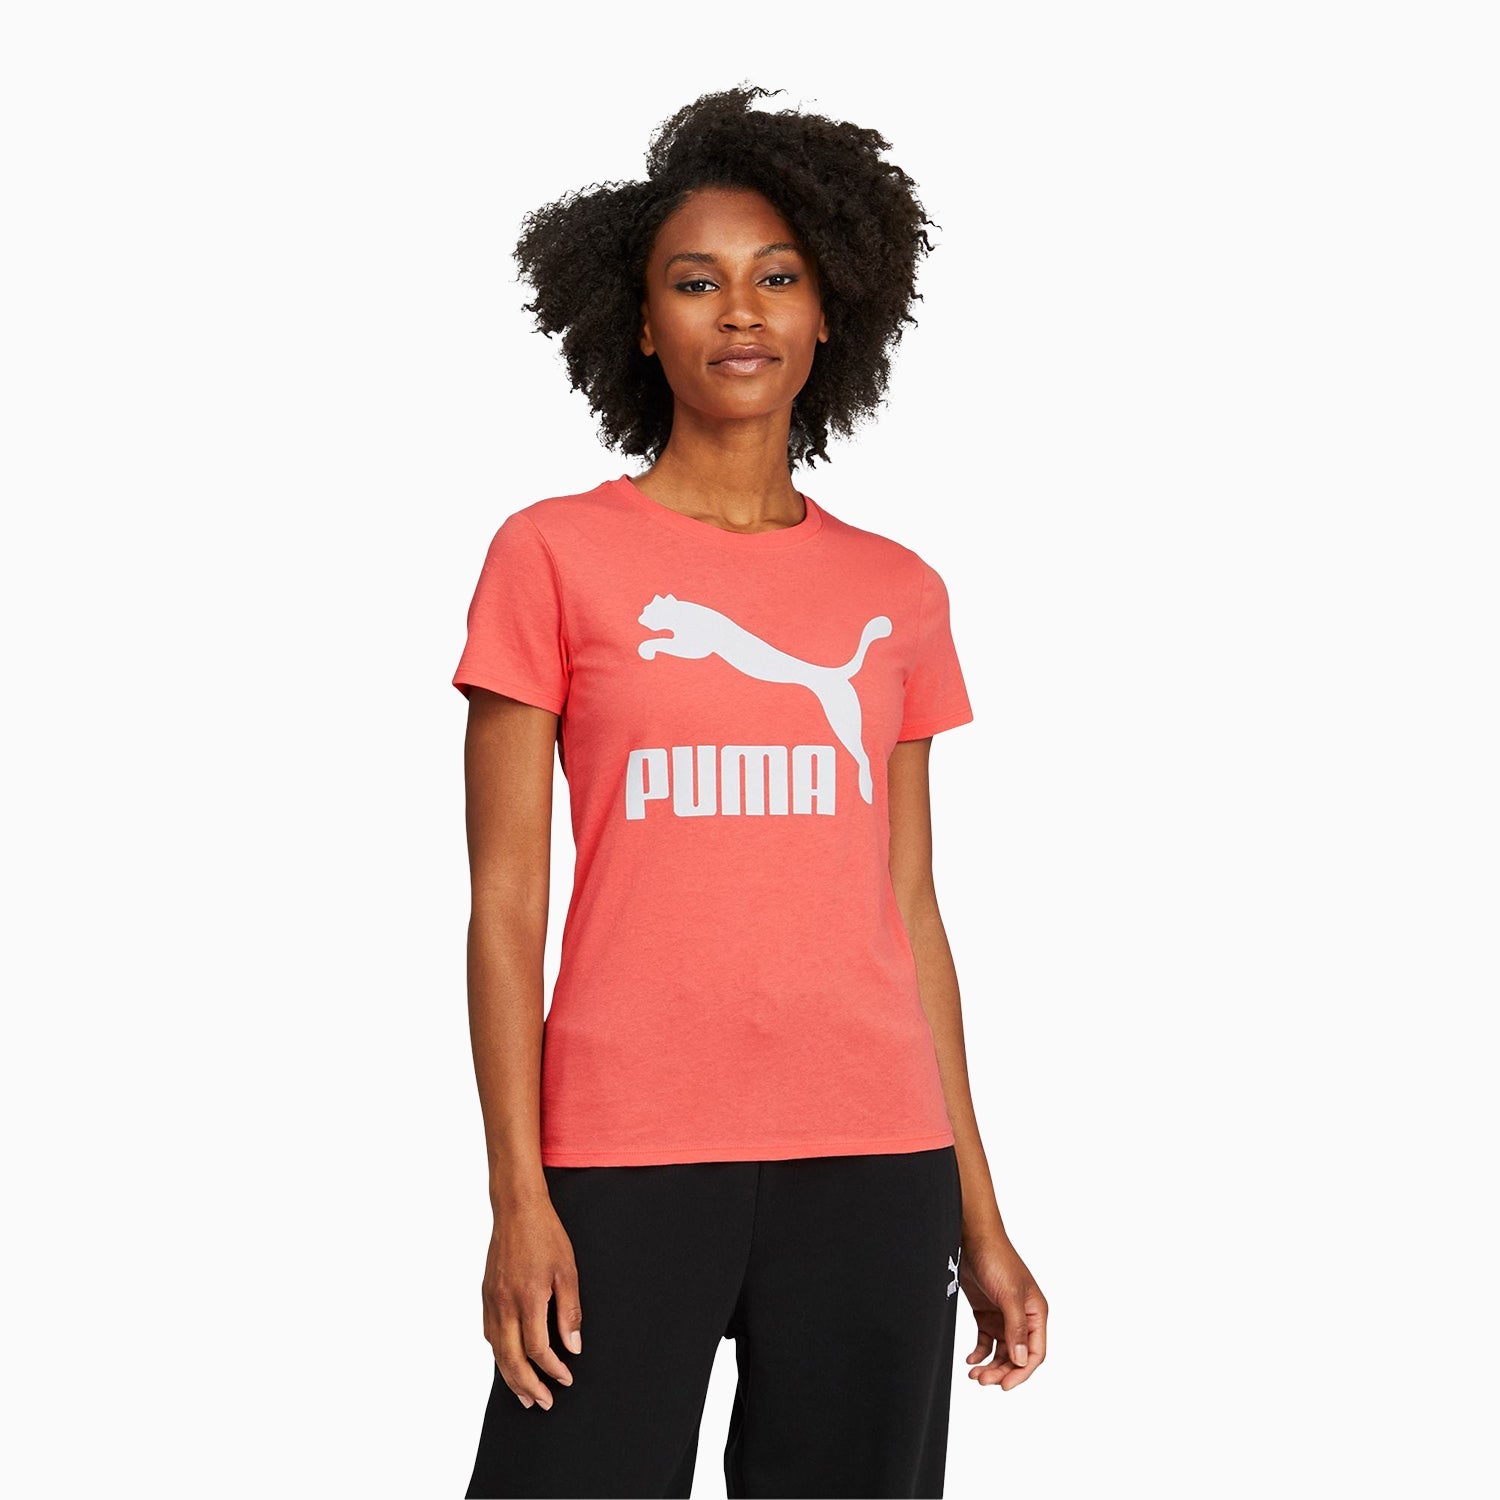 puma-womens-classics-logo-outfit-531865-24-531871-24